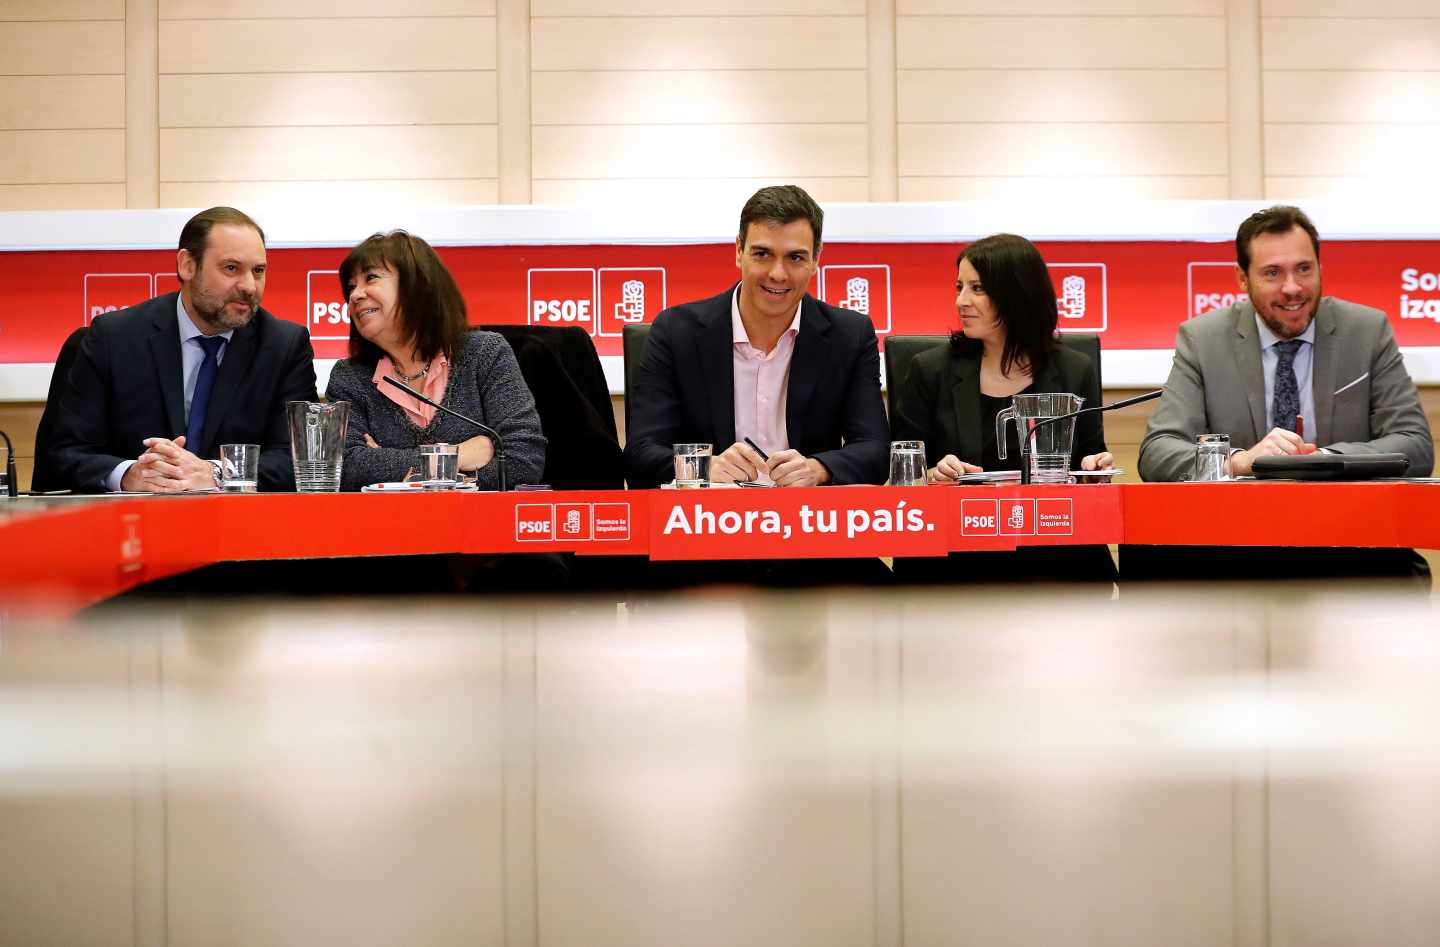 El PSOE se aferra a la caída del PP en el CIS y celebra recortarle 14 puntos en un año